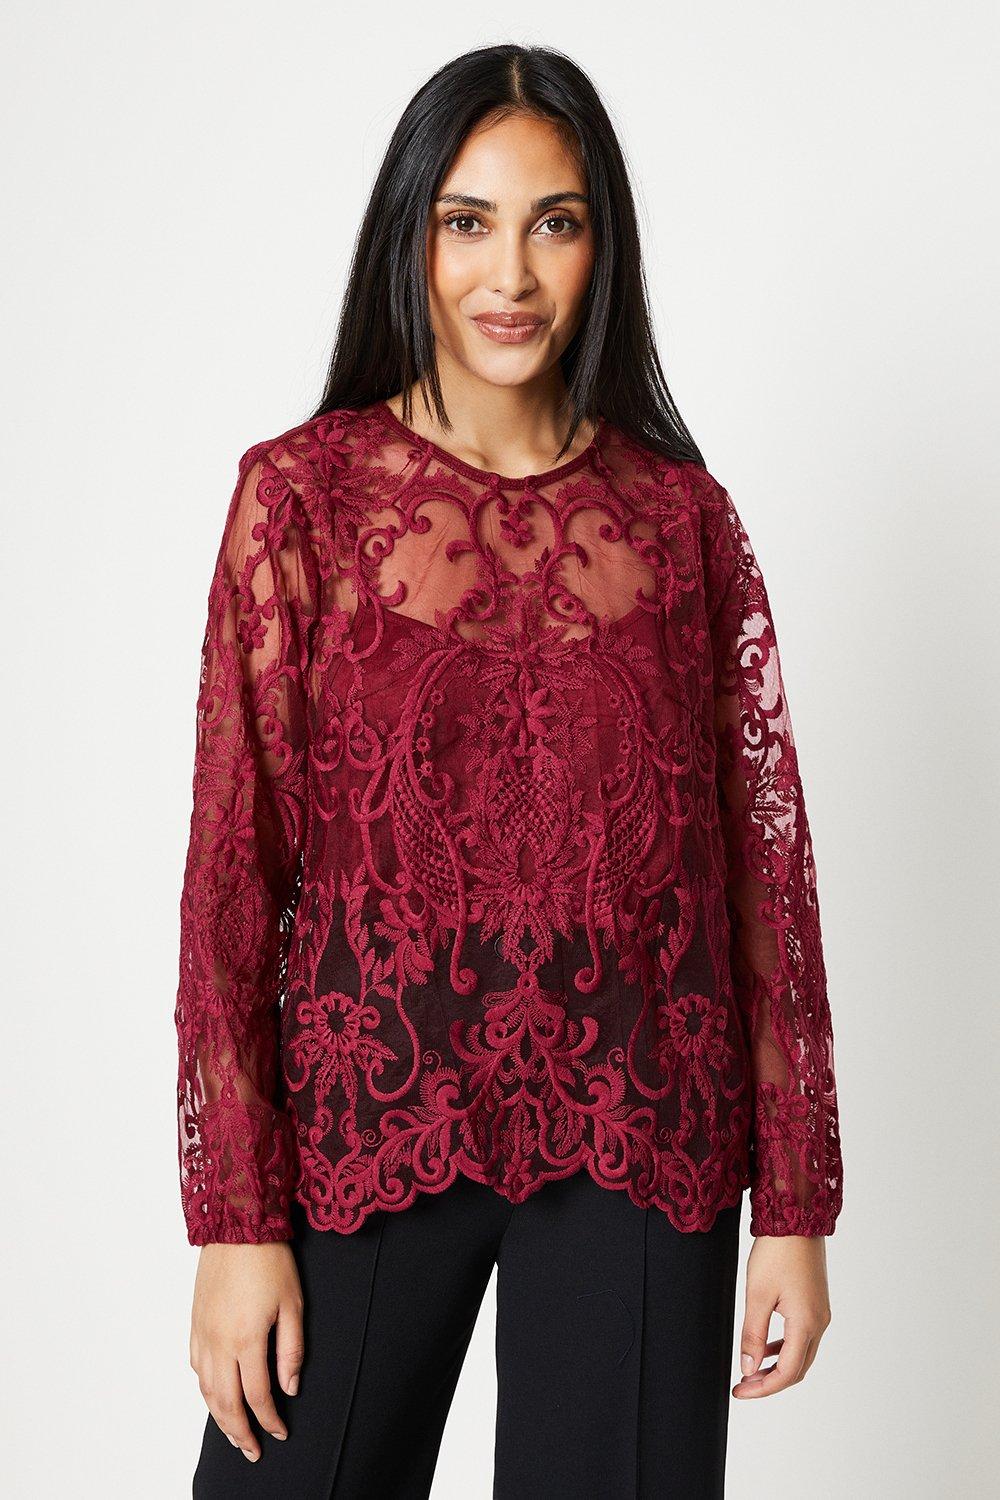 Миниатюрная кружевная блузка с высоким воротником Wallis, красный фото